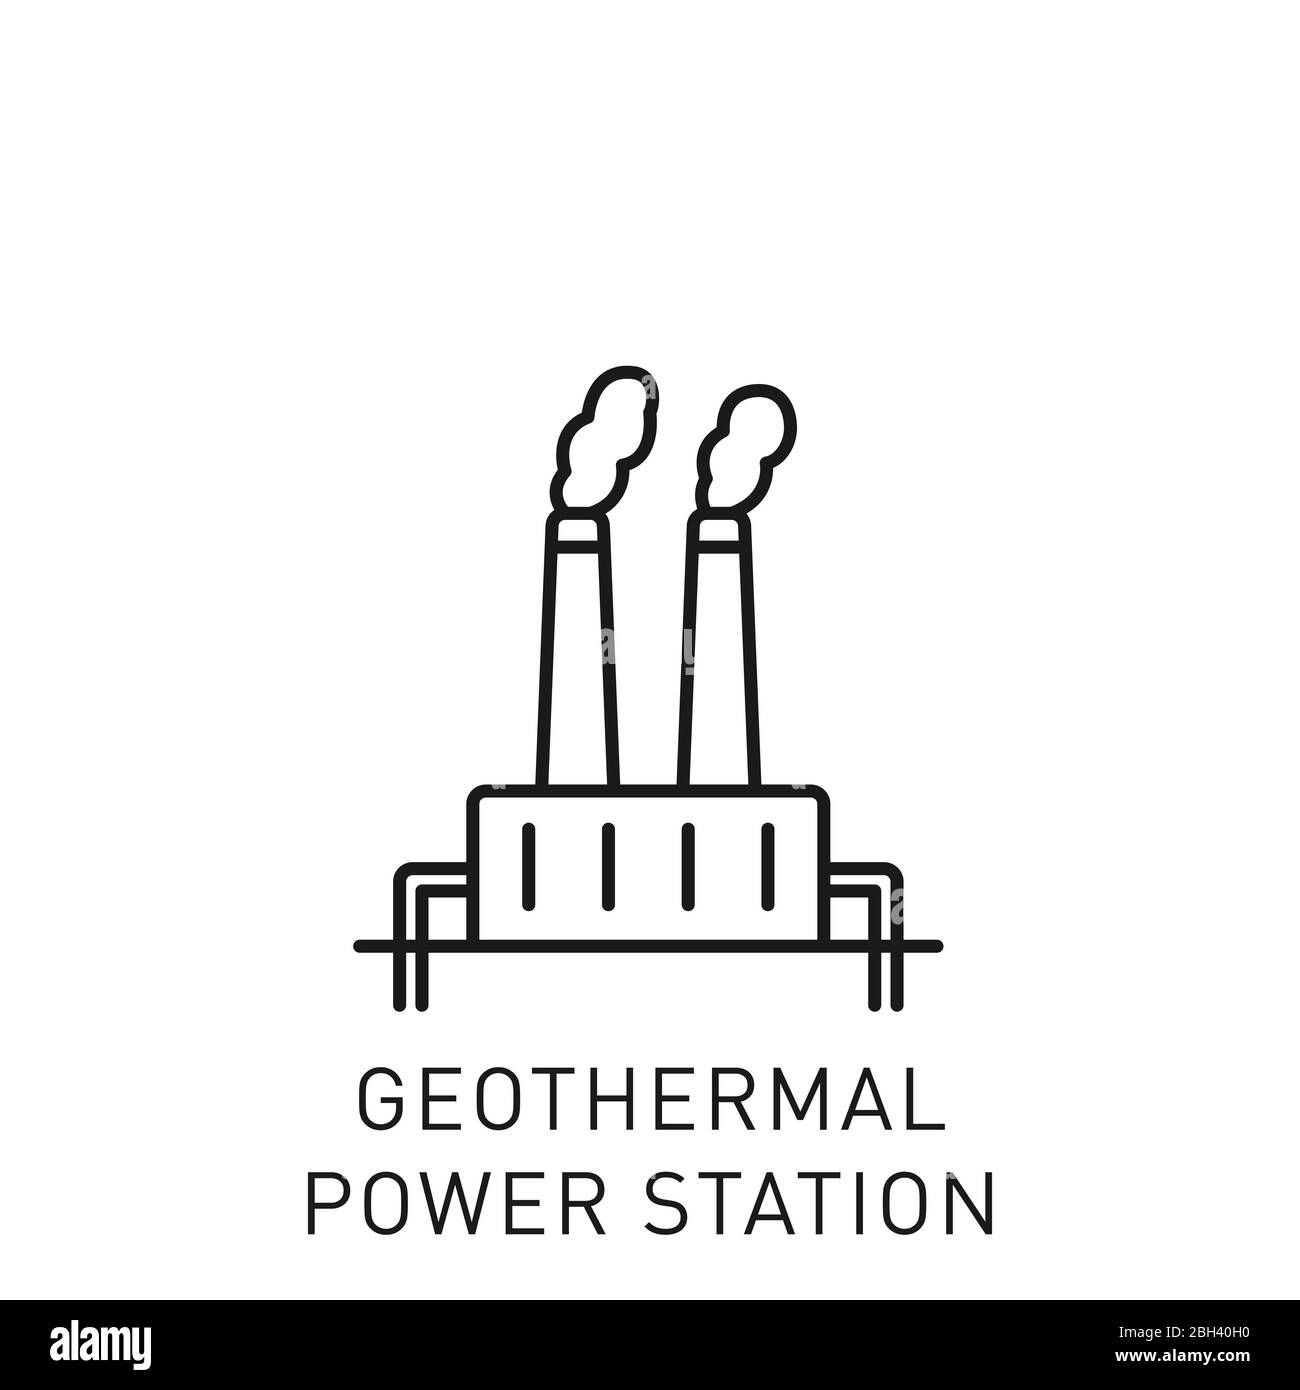 Icona della linea sottile della centrale elettrica geotermica. Elemento di progettazione per le energie rinnovabili, la tecnologia verde. Illustrazione vettoriale. Illustrazione Vettoriale